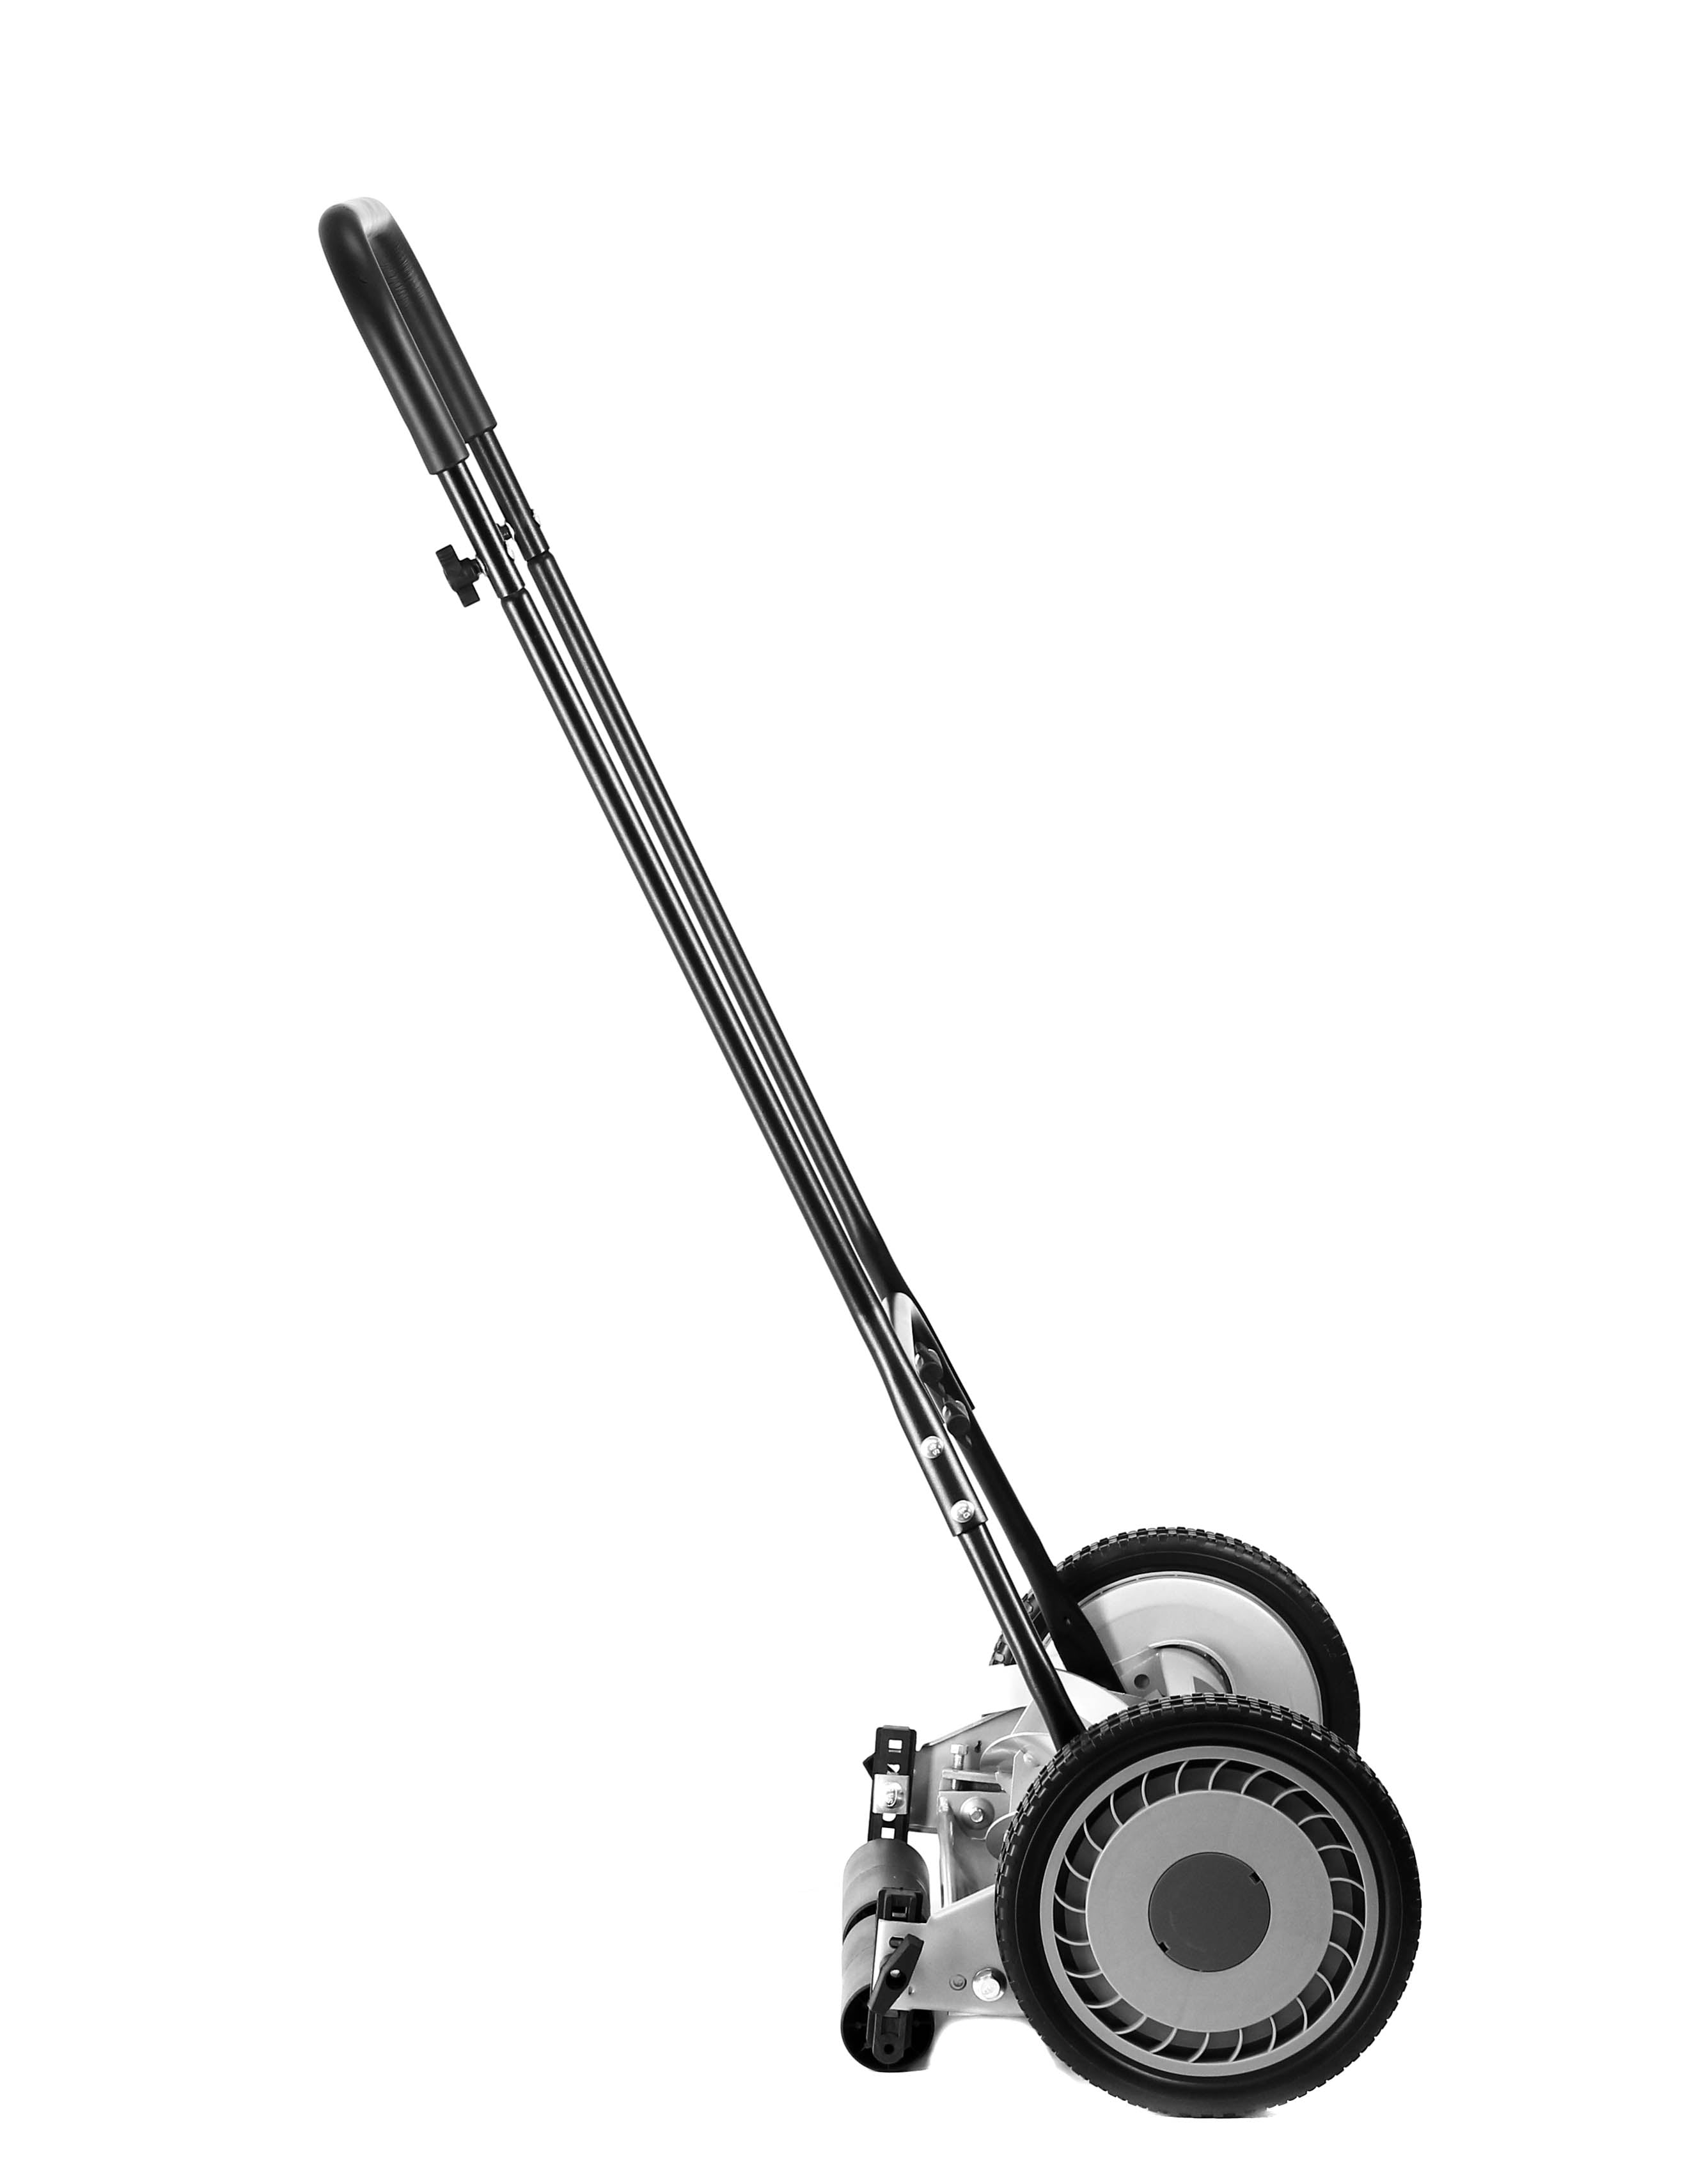 American Lawn Mower 16 Manual Reel Mower – American Lawn Mower Co